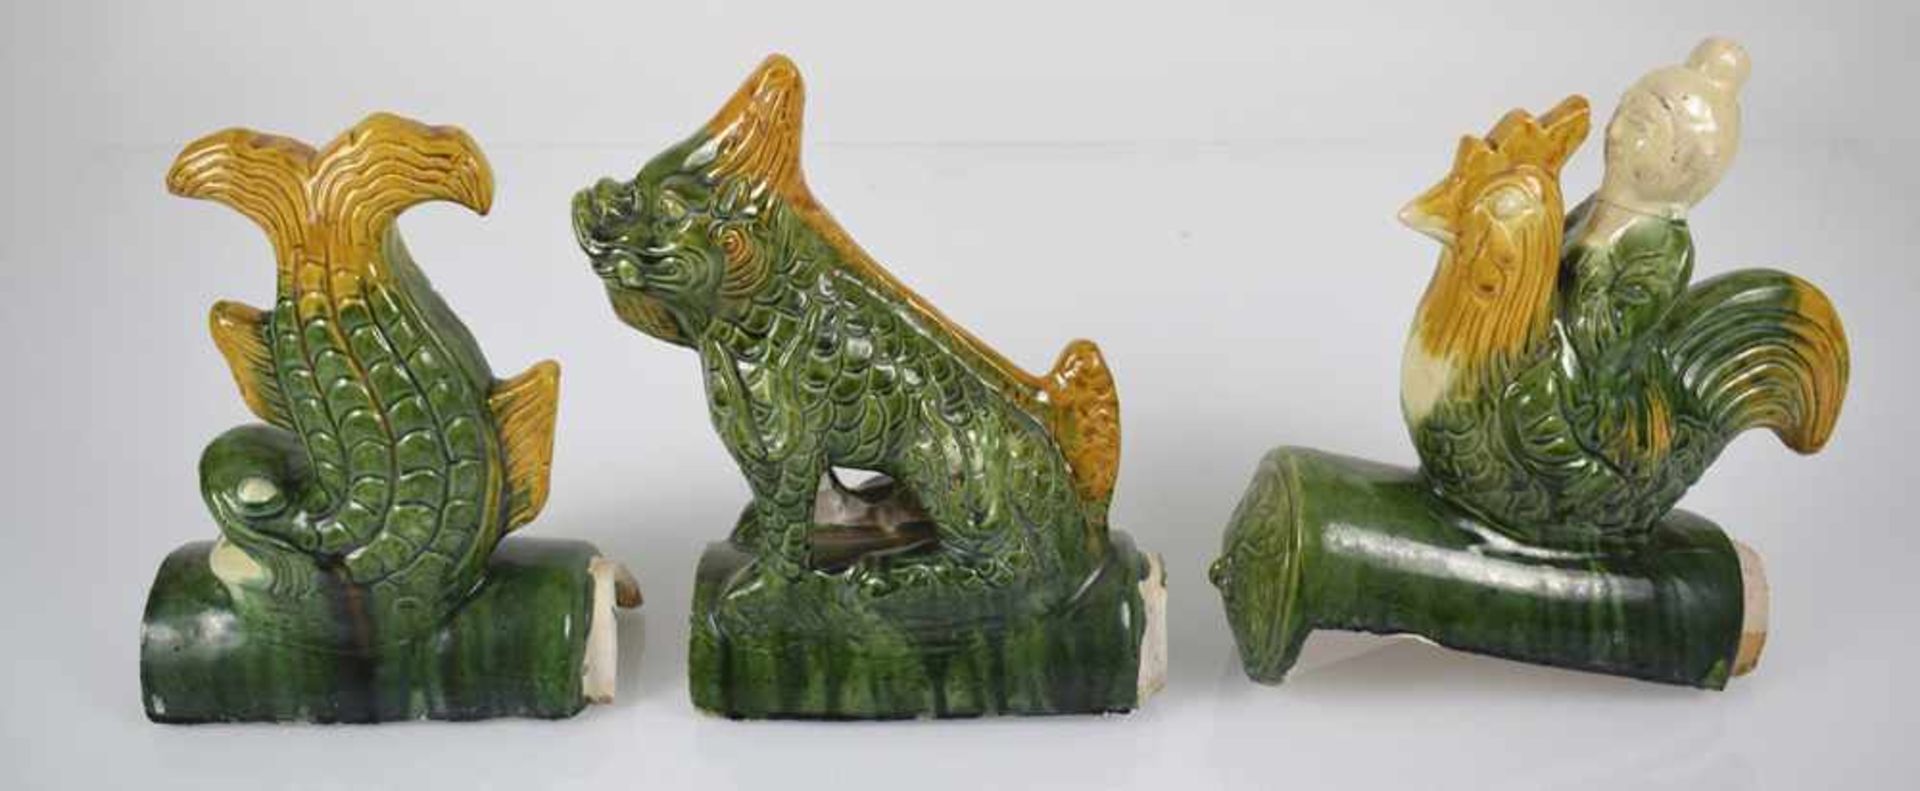 Sechs Dachreiter in Form von Tieren und mythologischen Kreaturen, mit 'sancai'-Glasur - Bild 2 aus 8